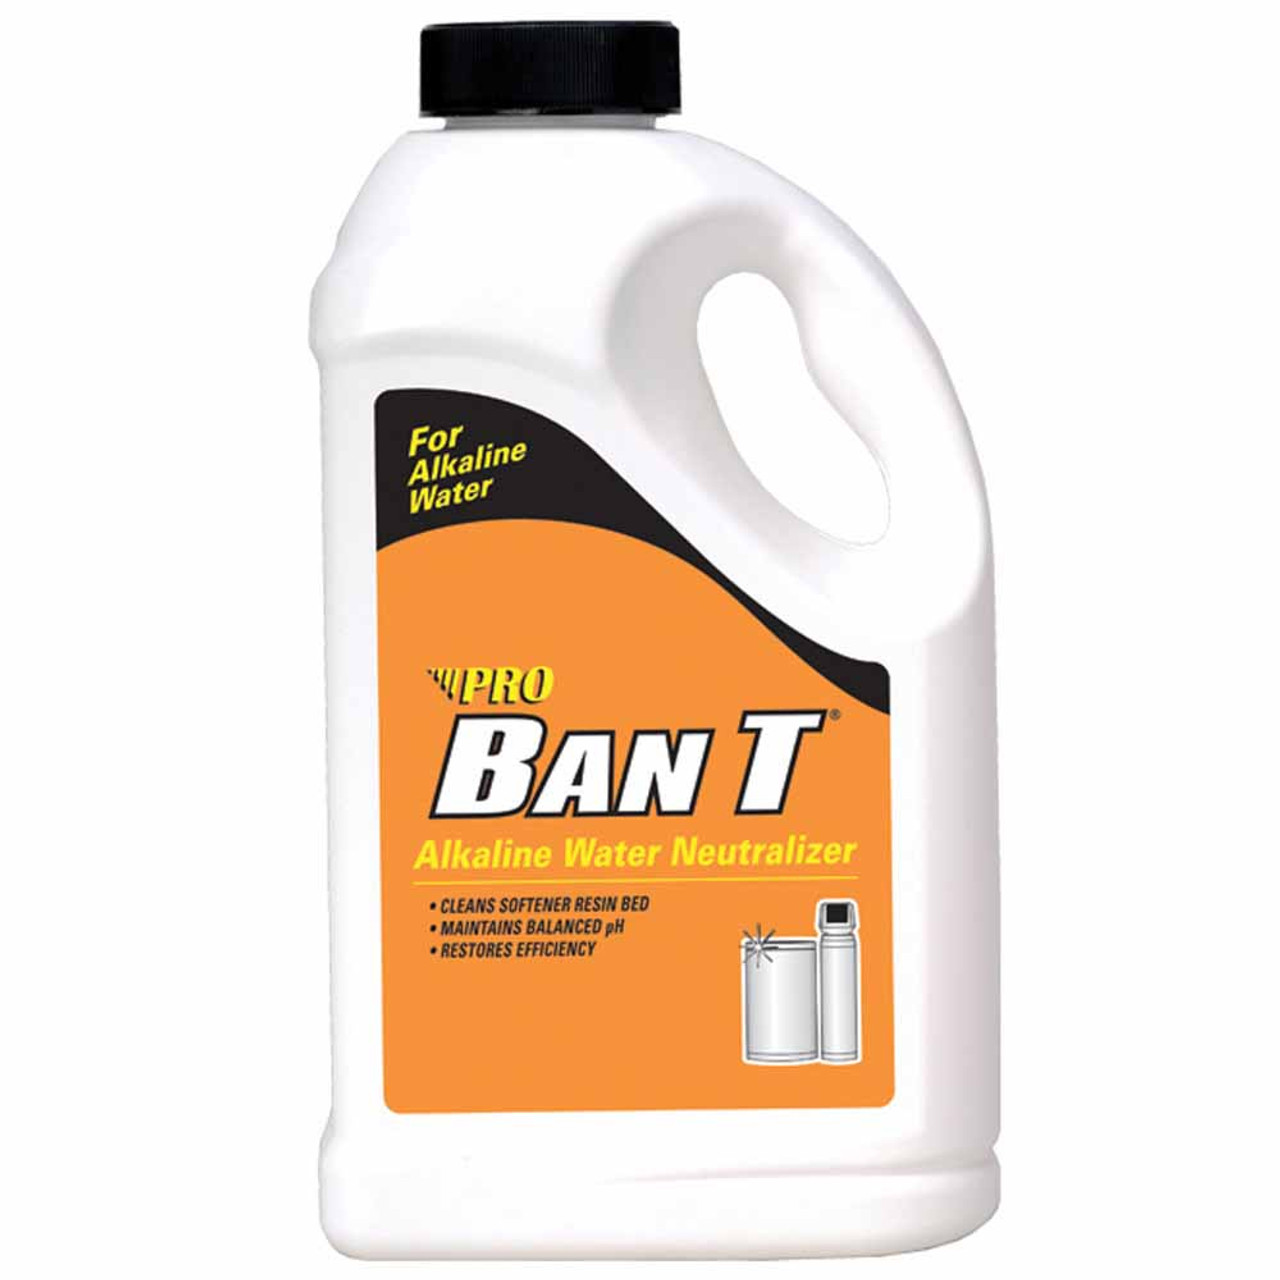 Pro Ban T Citric Acid (6 4.0 lb. bottles) CASE